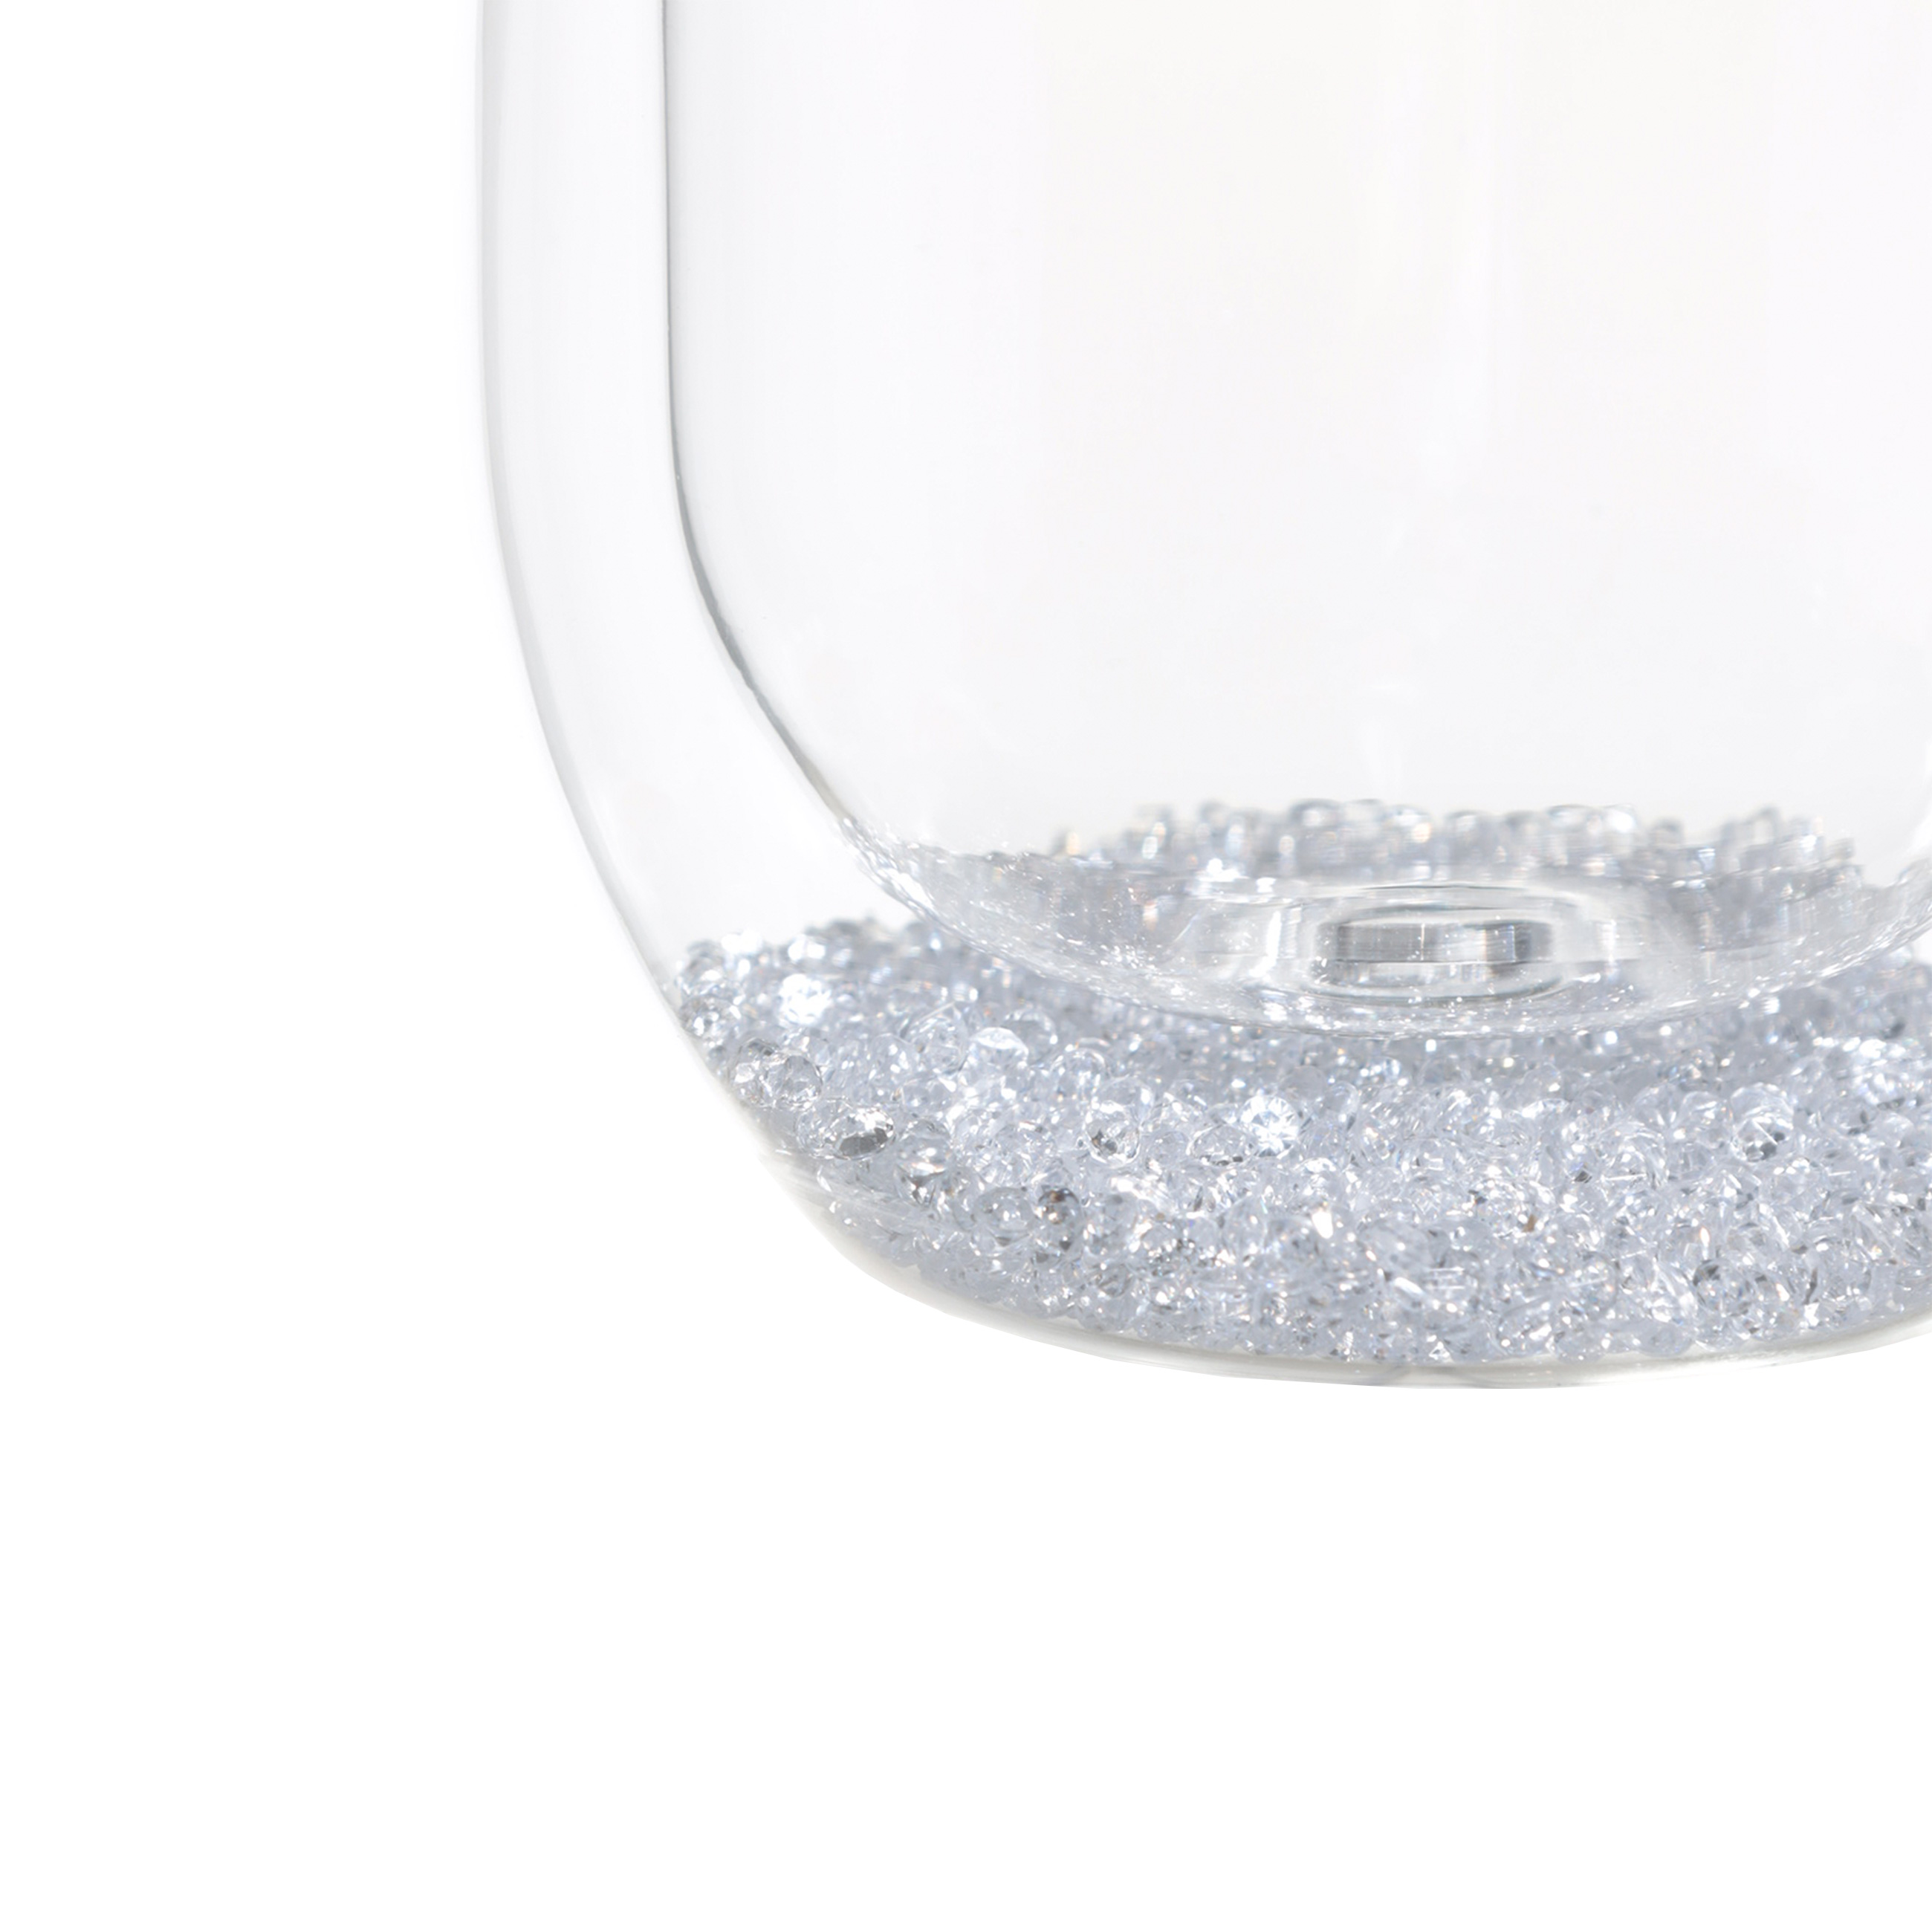 Стакан, 300 мл, 2 шт, стекло Б, с кристаллами внутри, Air decor изображение № 3